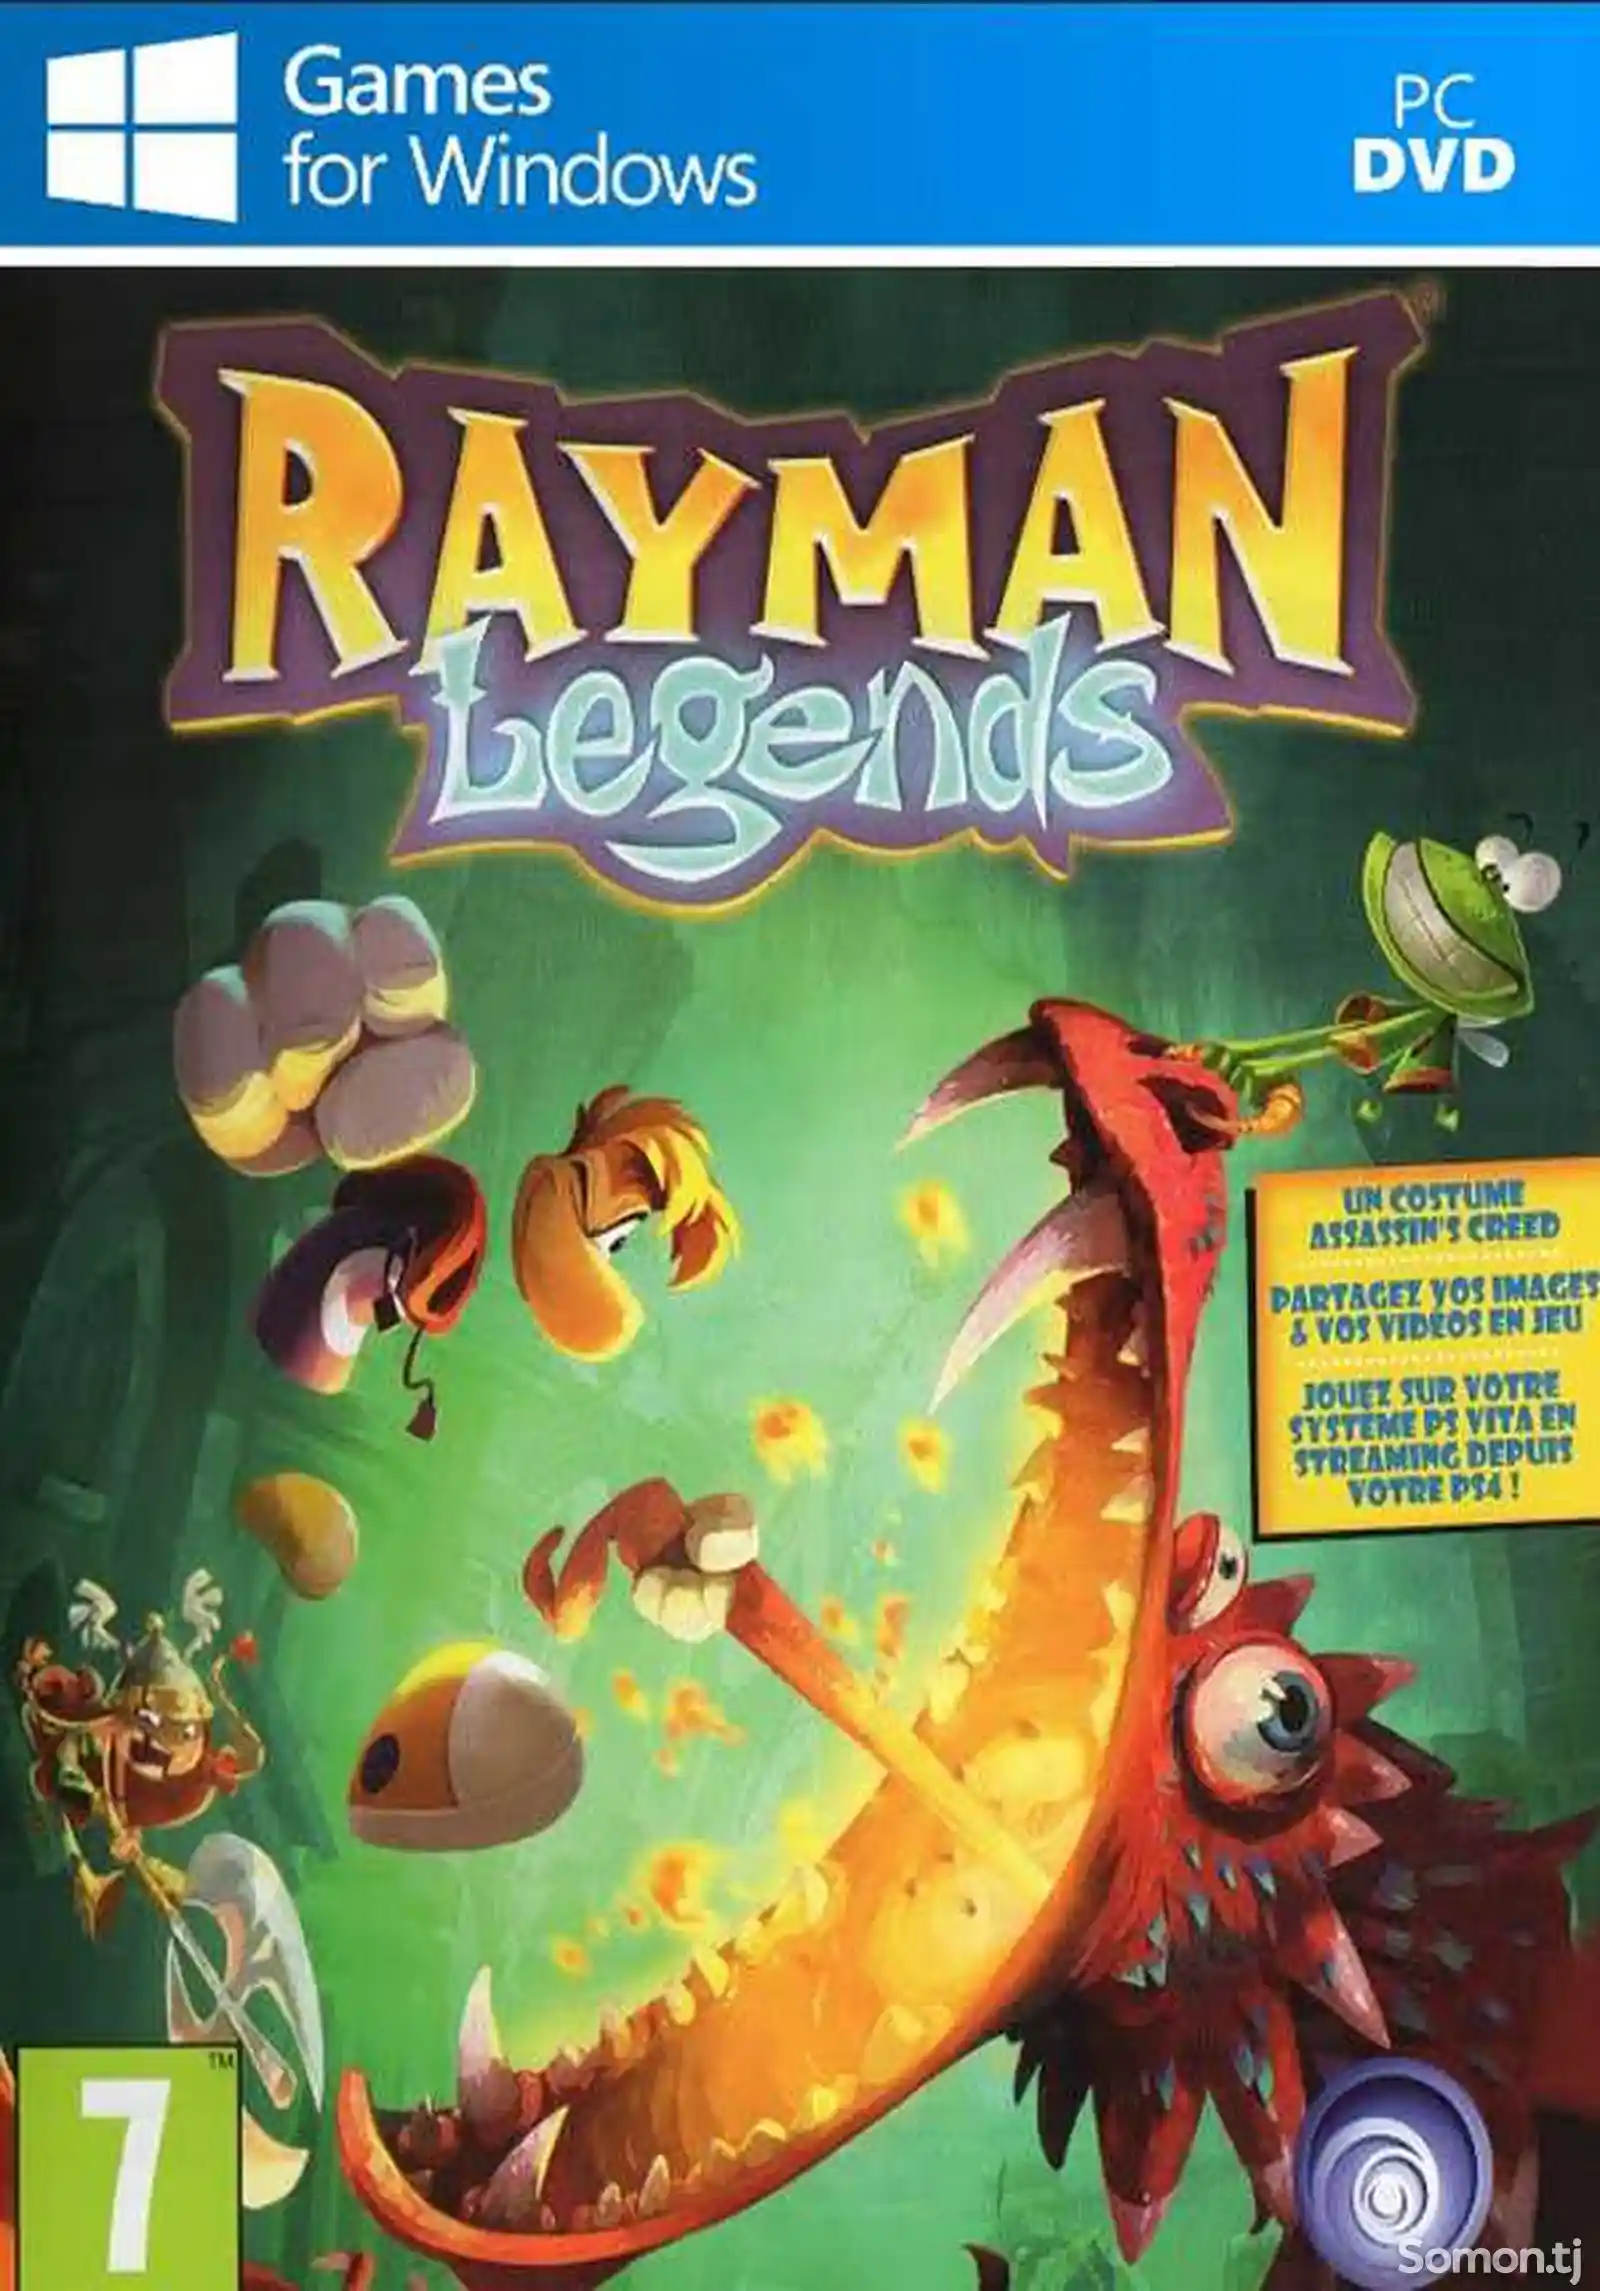 Игра Rayman legends для компьютера-пк-pc-1